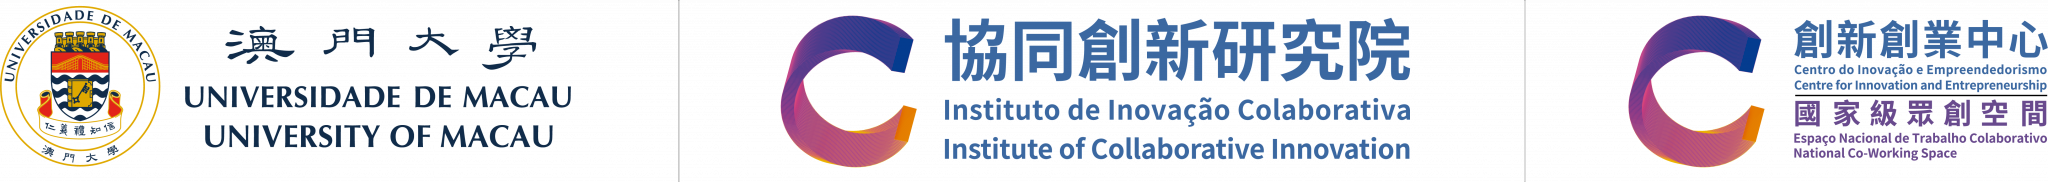 Centre for Innovation and Entrepreneurship Logo